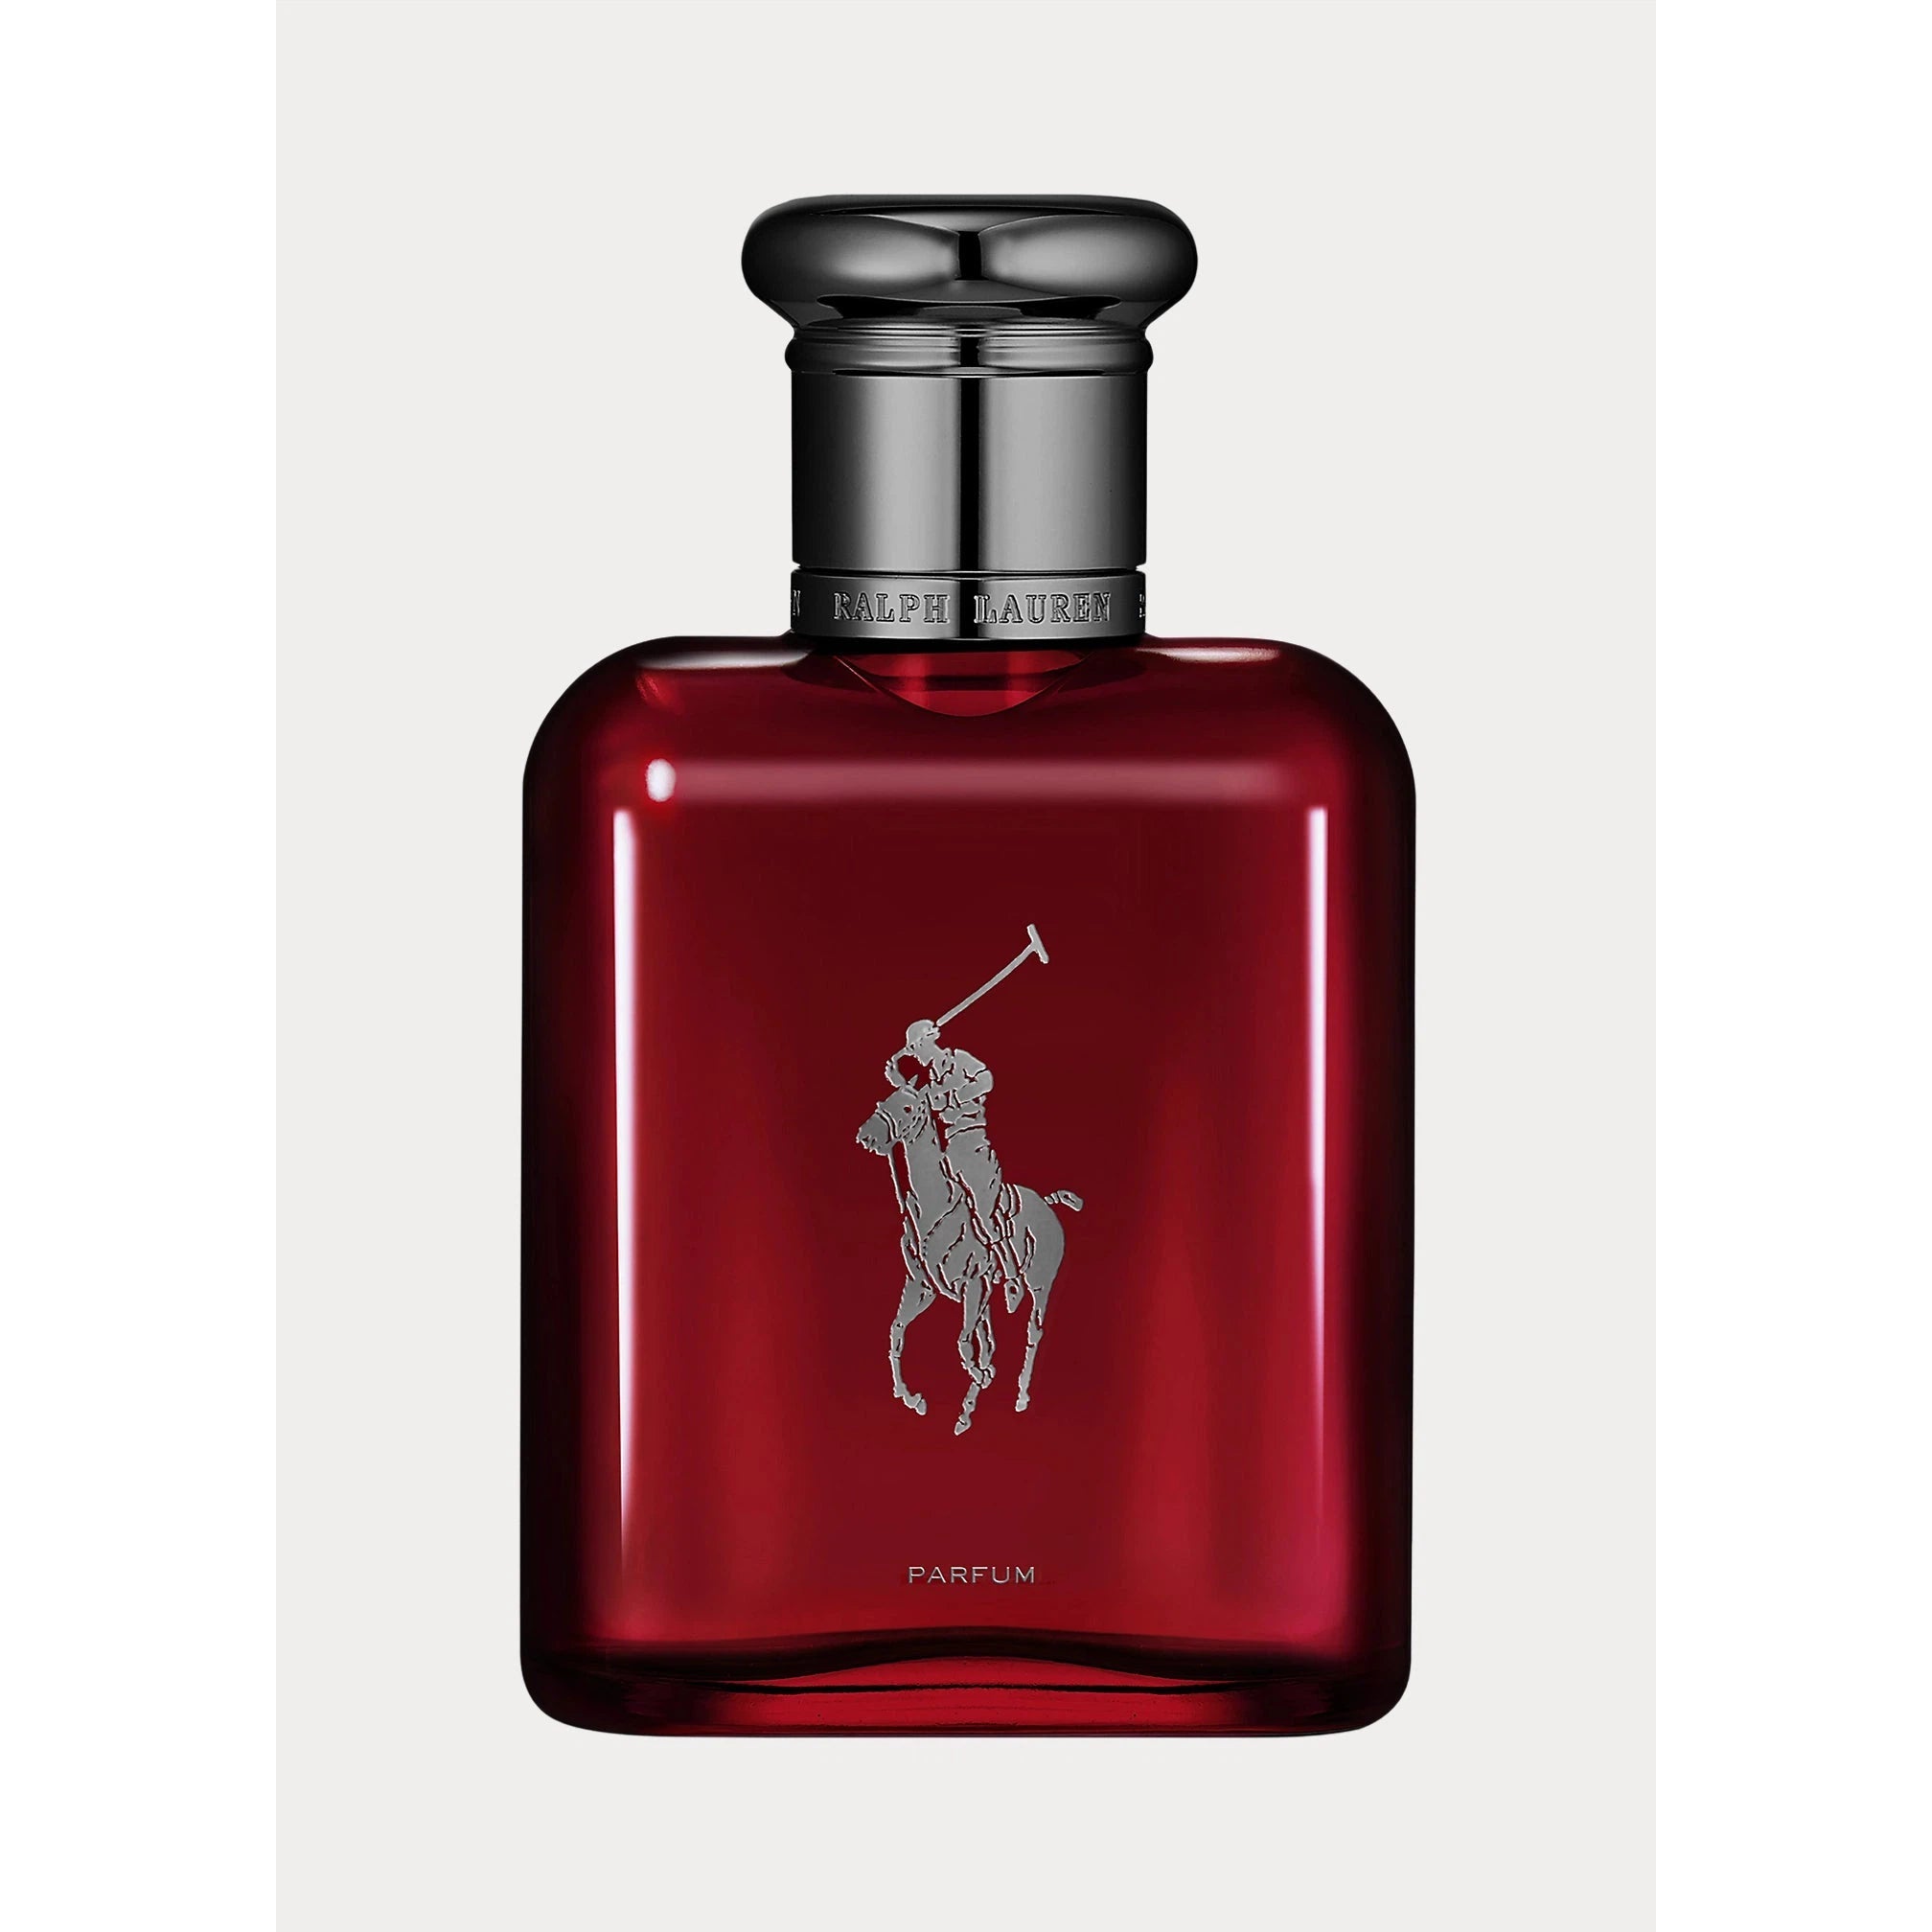 Perfume Ralph Lauren Polo Red Parfum (M) / 75 ml - 3605972768957- Prive Perfumes Honduras